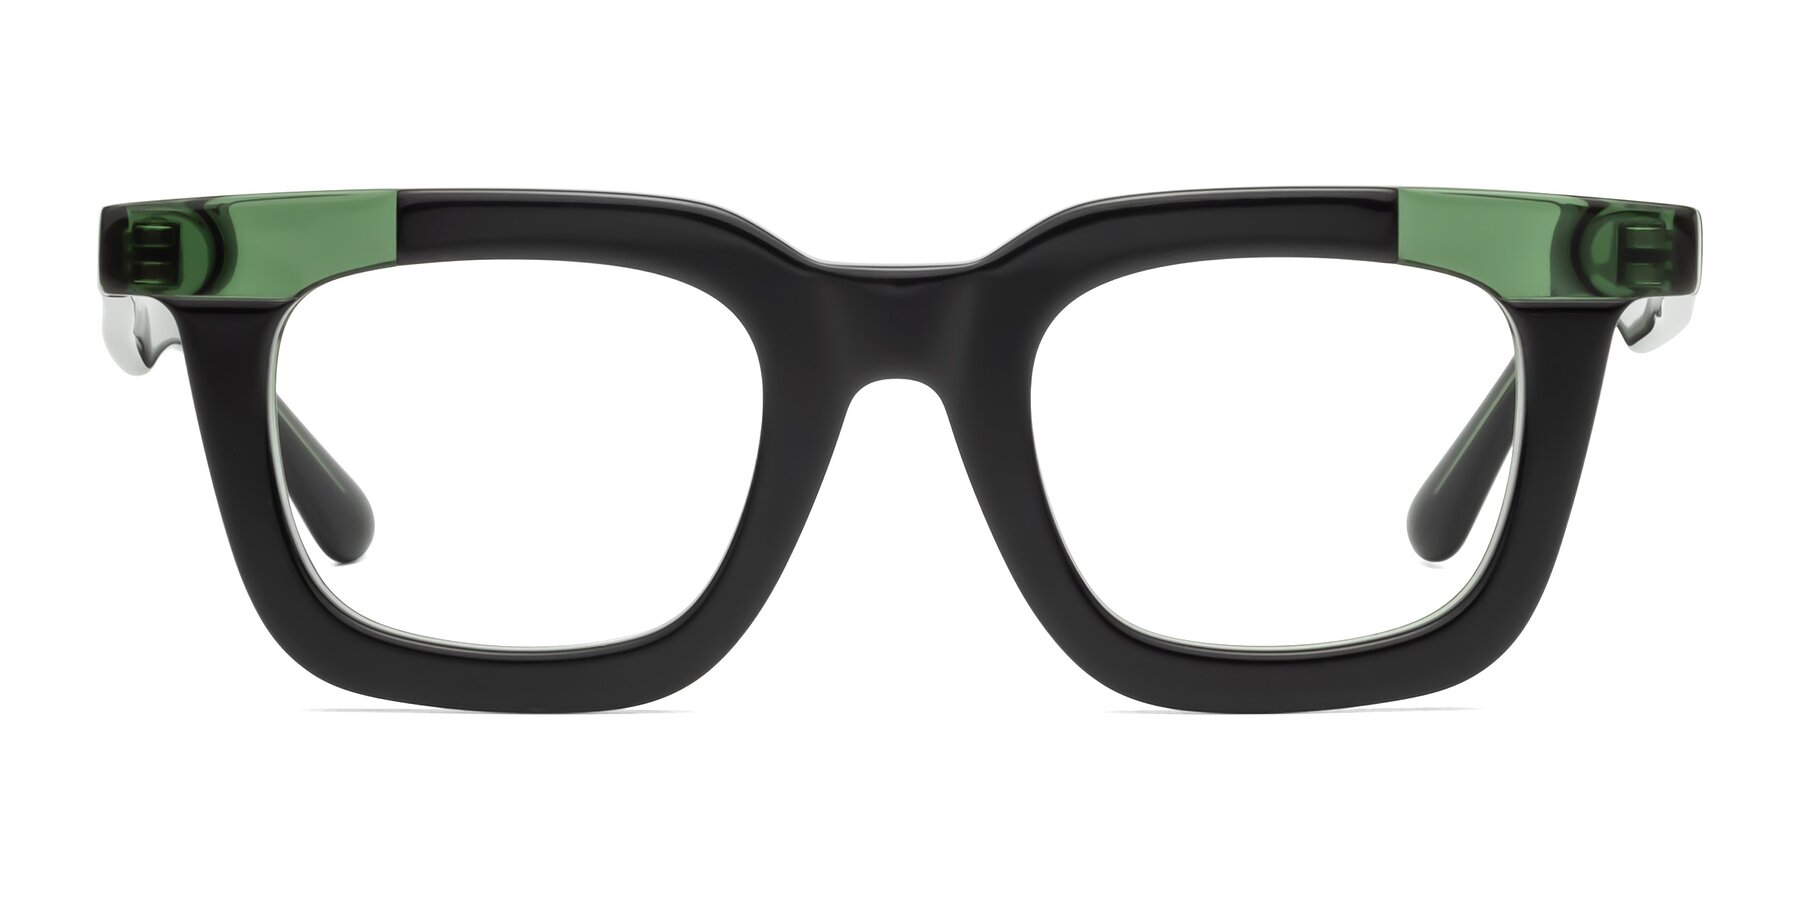 Mill - Black / Green Sunglasses Frame